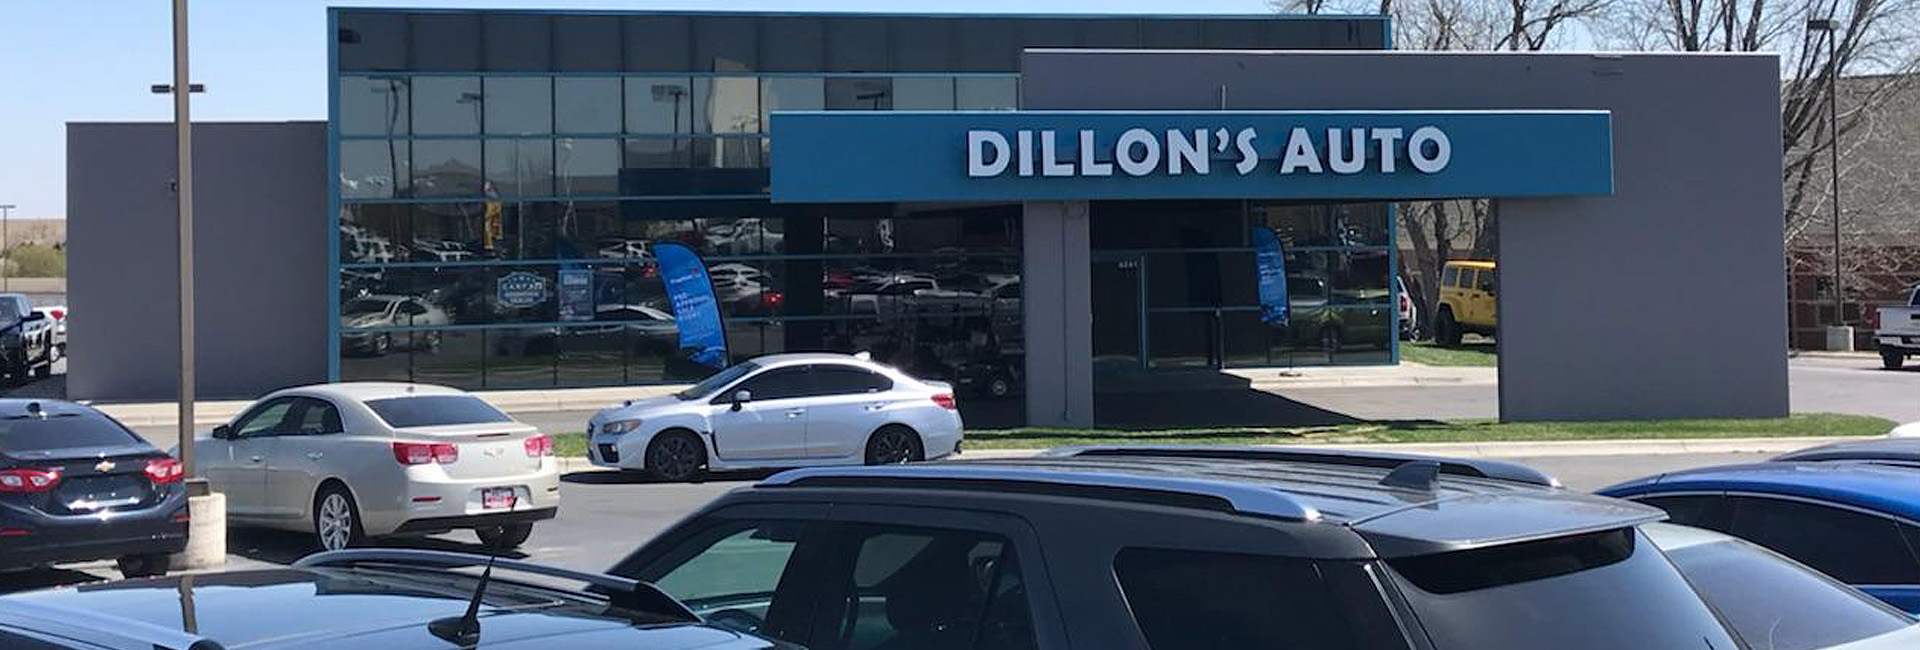 Dillon's Auto North